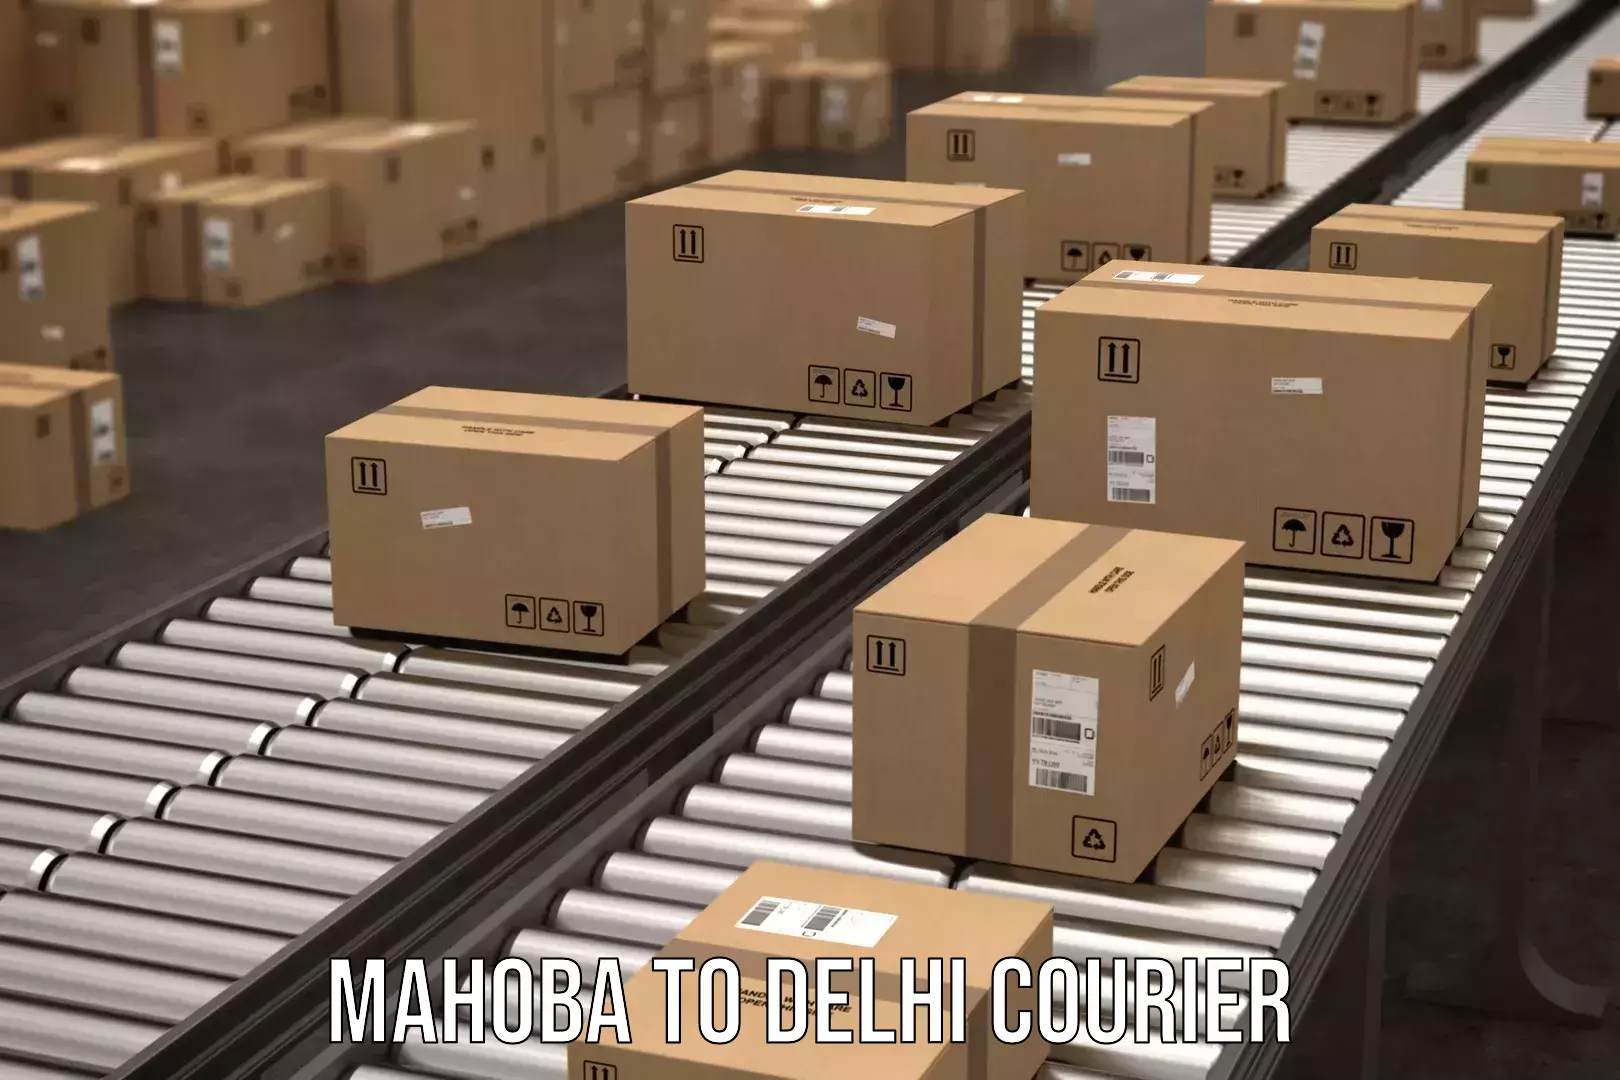 24/7 courier service Mahoba to Kalkaji